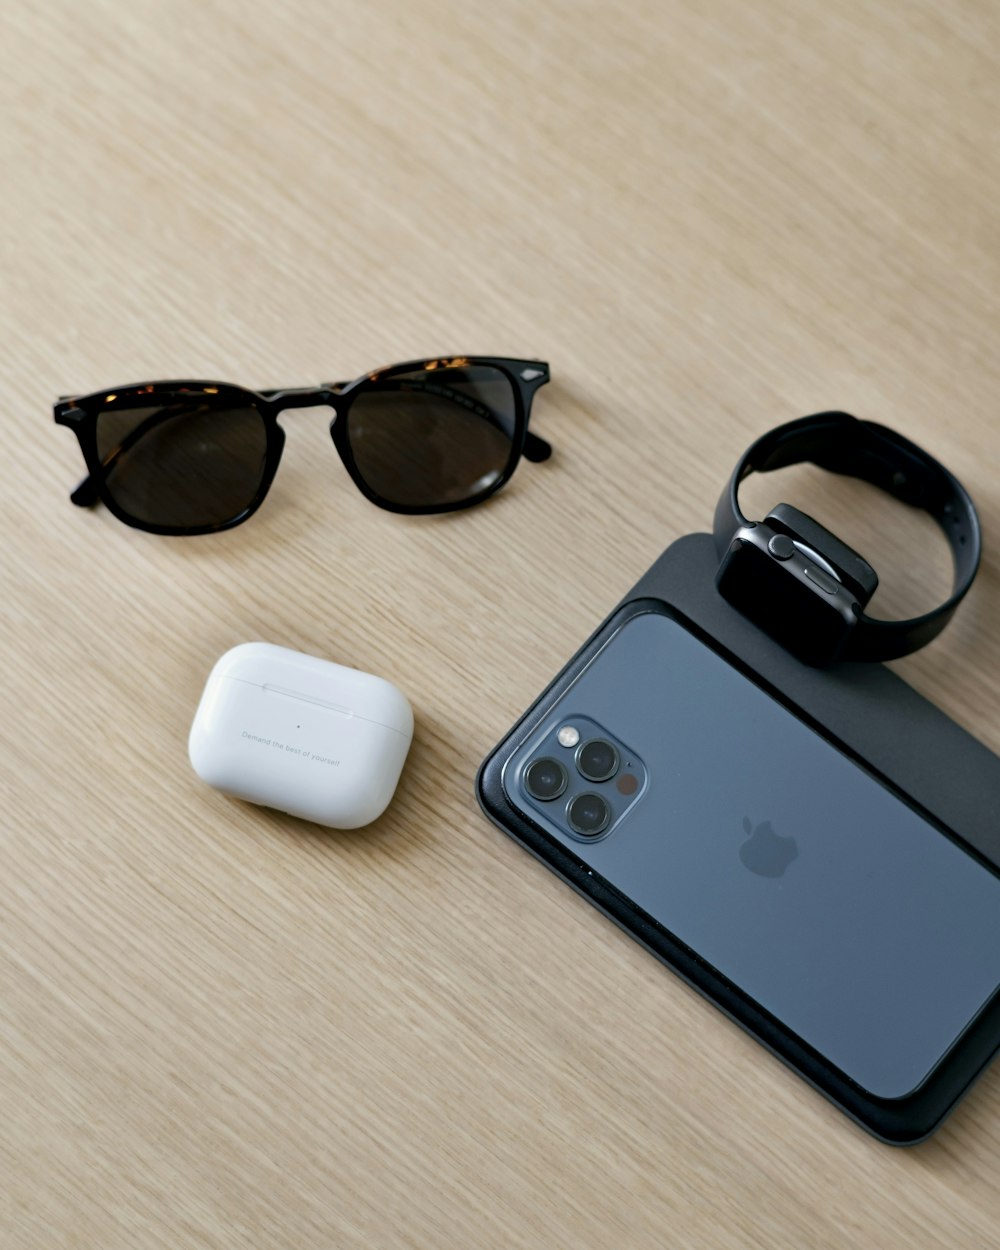 black framed sunglasses beside white apple airpods